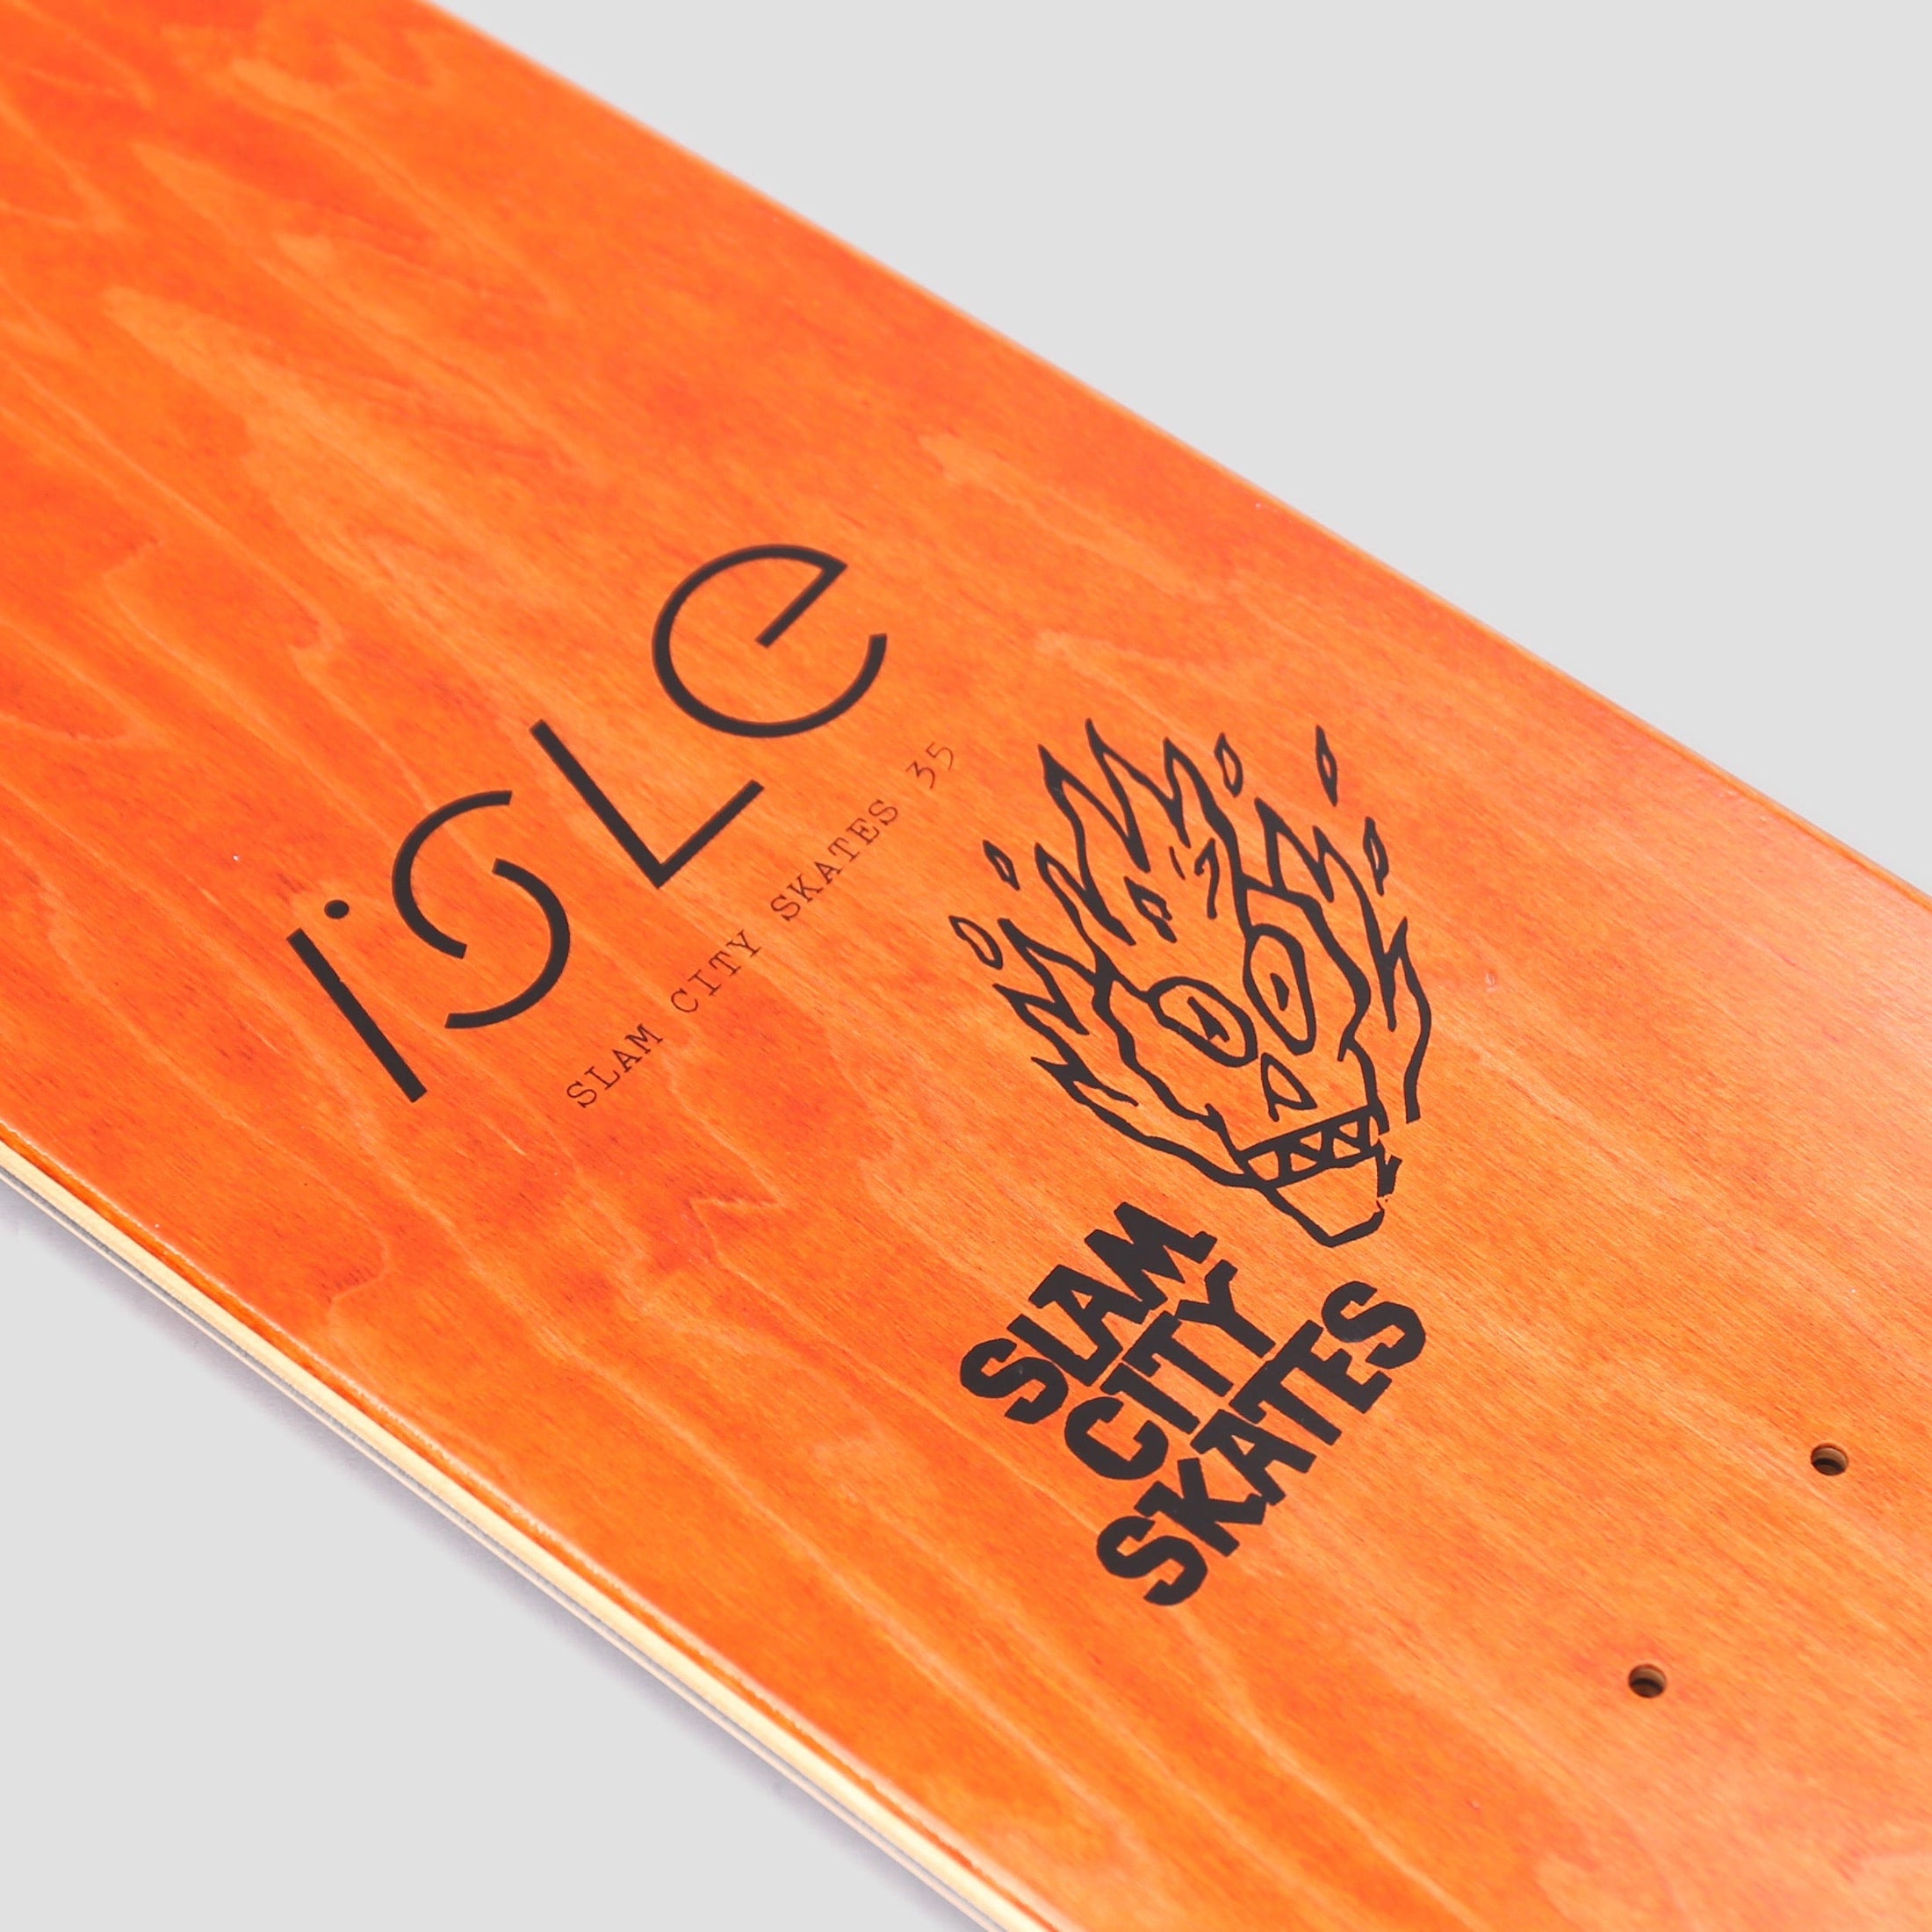 Isle X Slam City Skates 8.375 Skateboard Deck